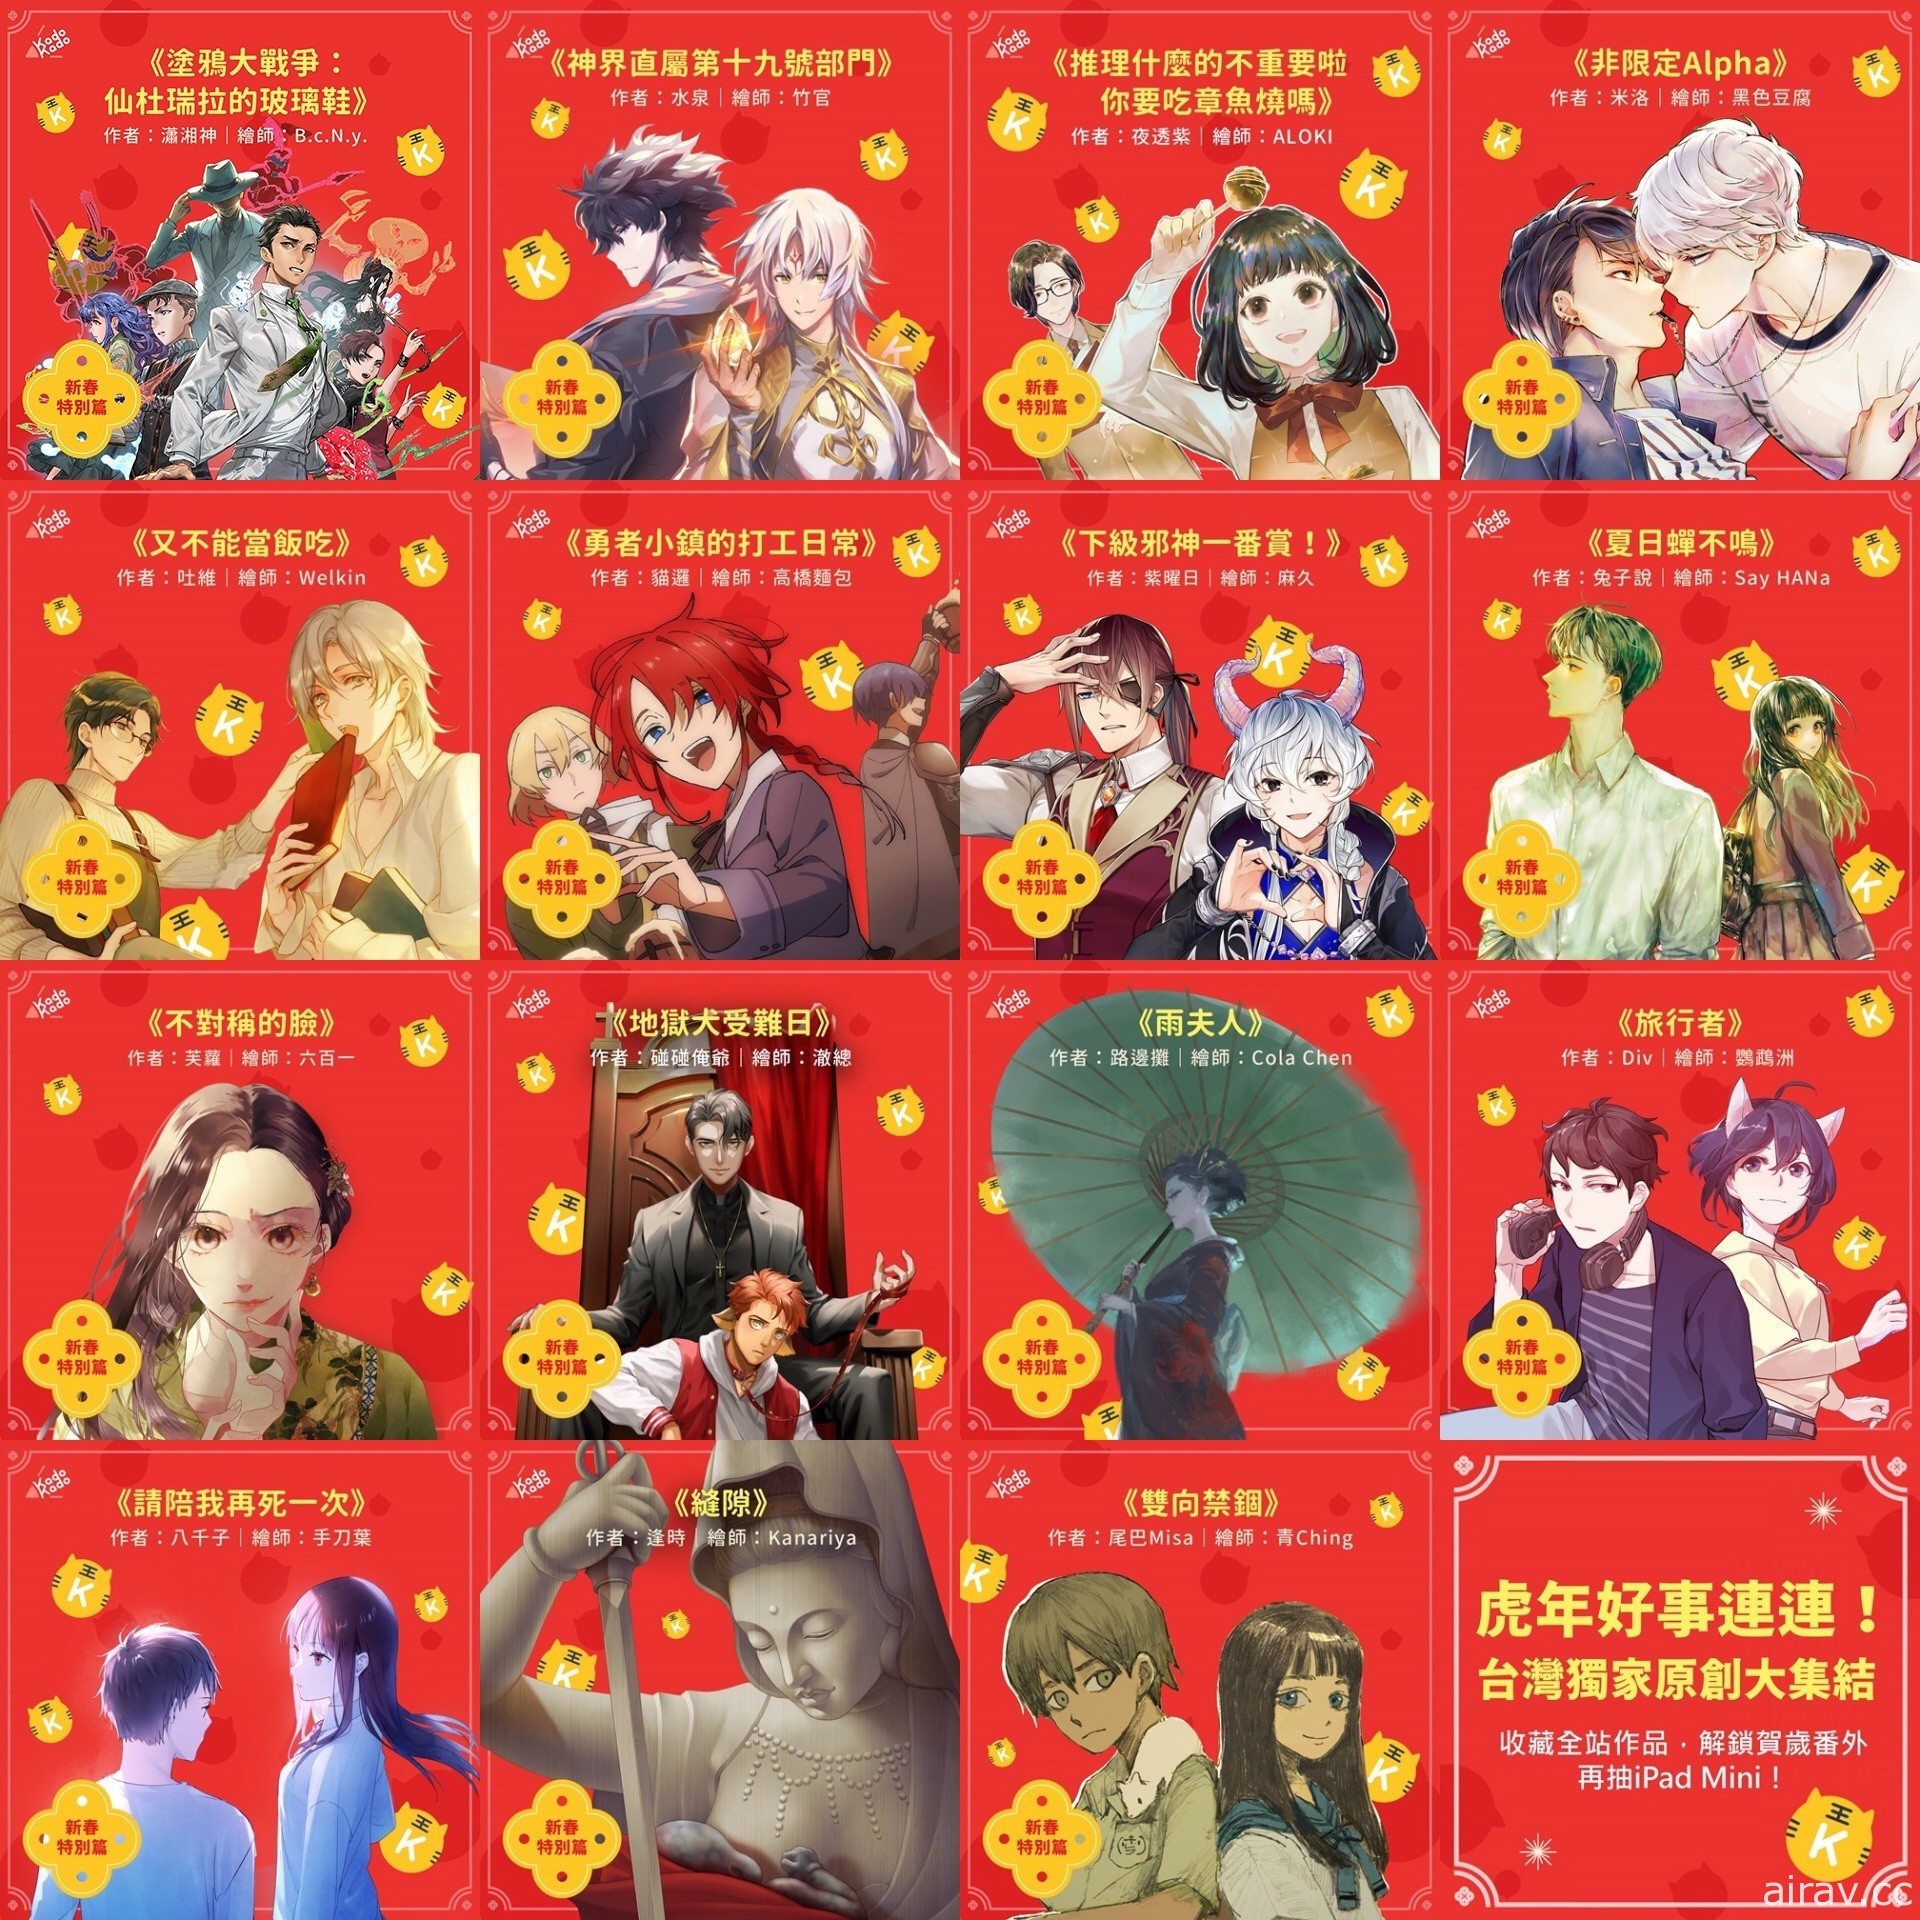 小說平台 KadoKado 角角者推出「新年賀歲番外篇」活動